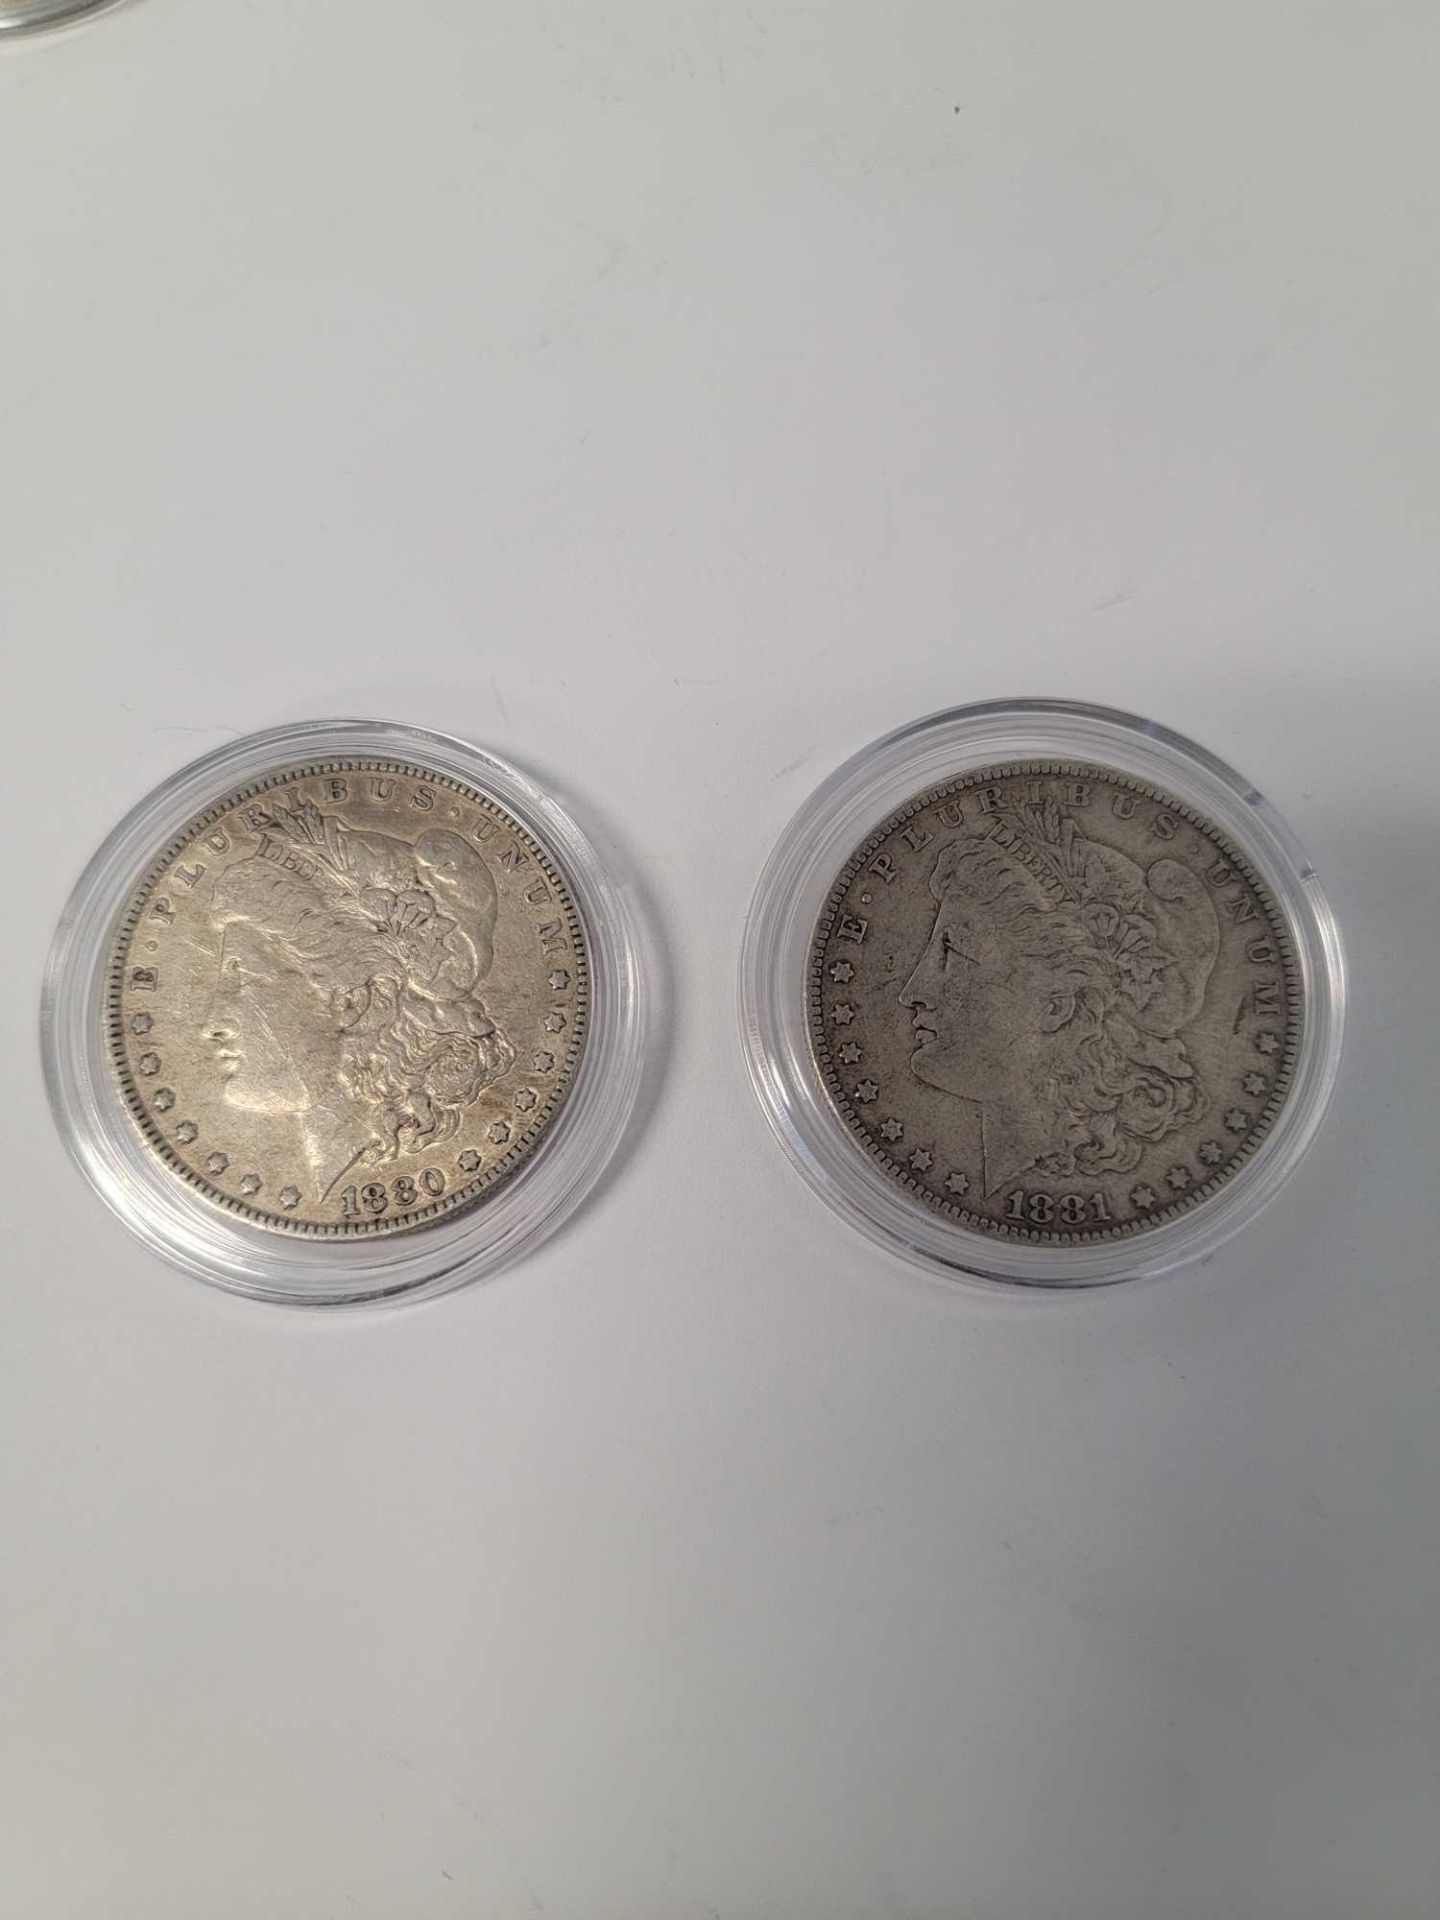 1880 and 1881 Morgan Dollar